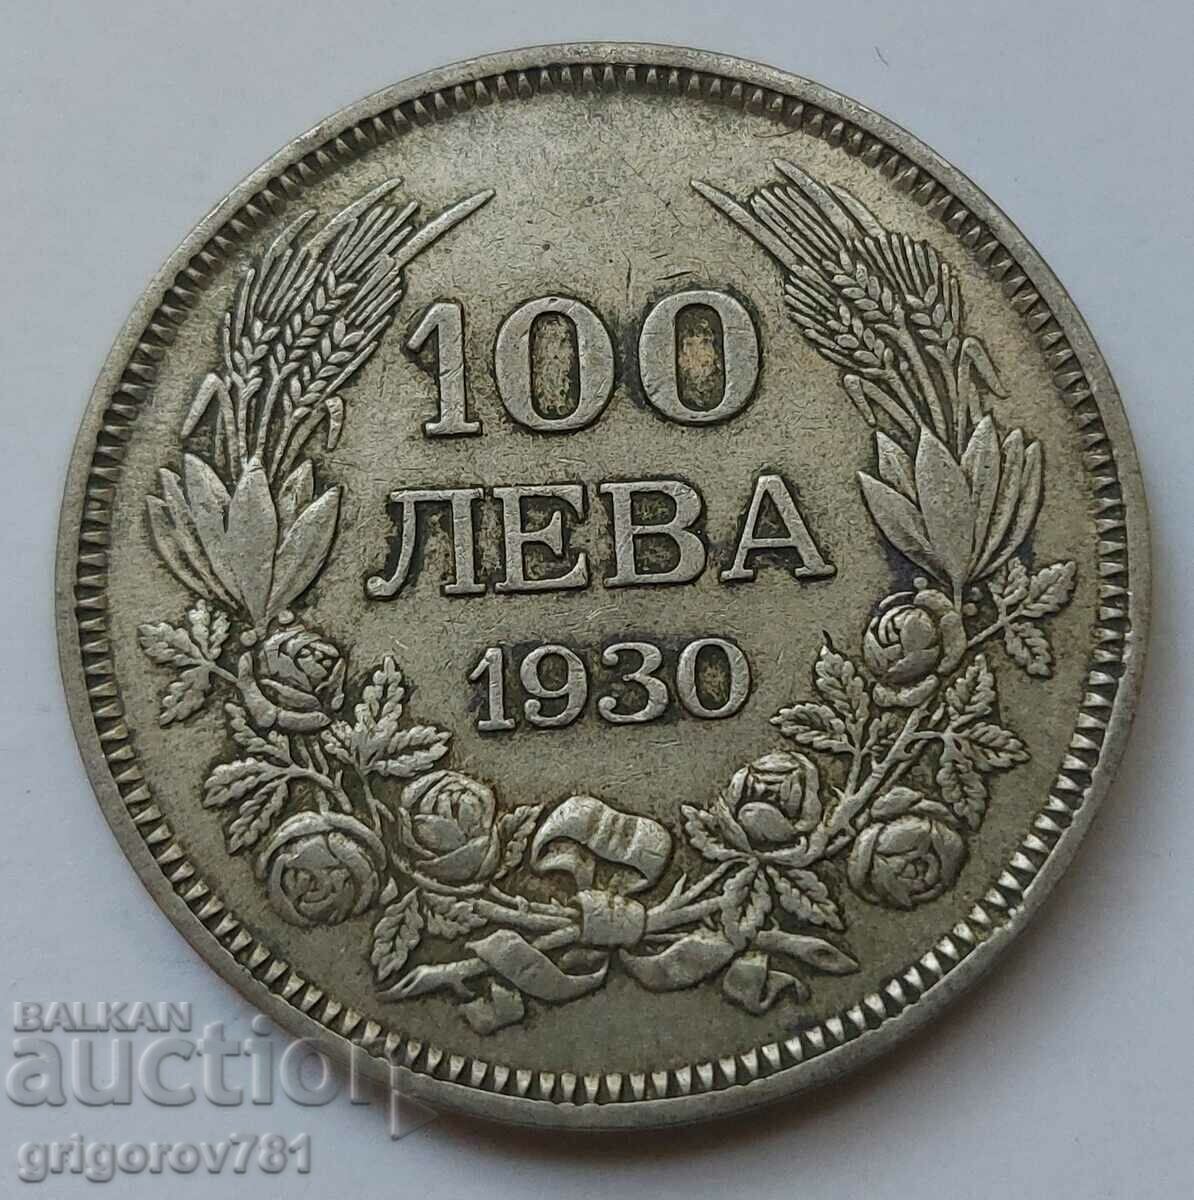 100 leva silver Bulgaria 1930 - silver coin #2